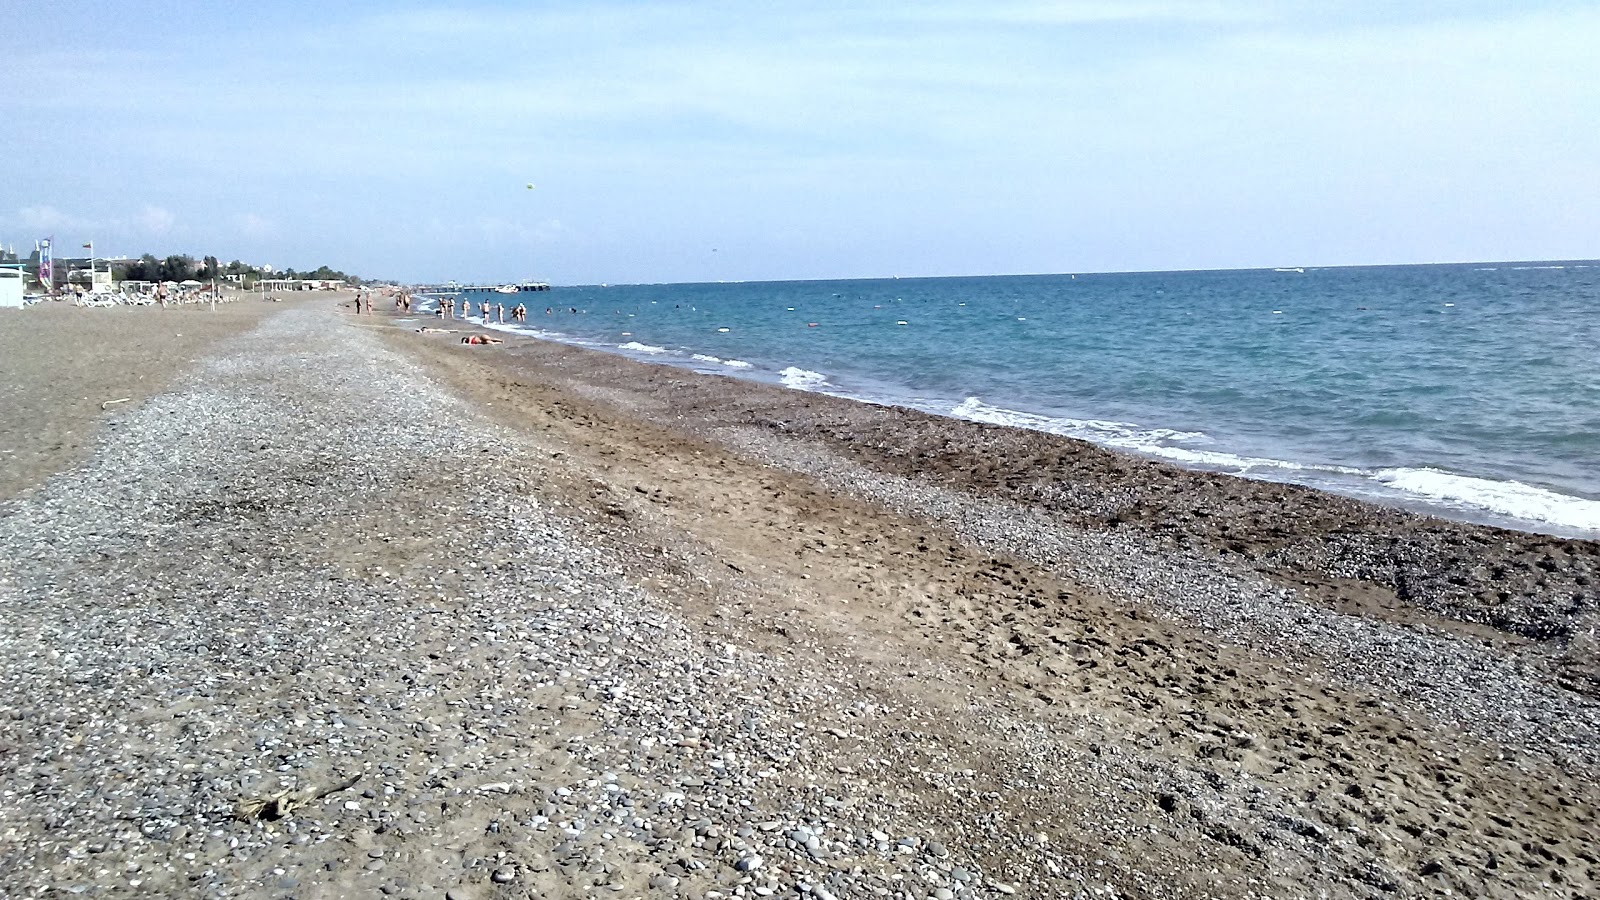 Zdjęcie Bogazkent beach częściowo obszar hotelowy